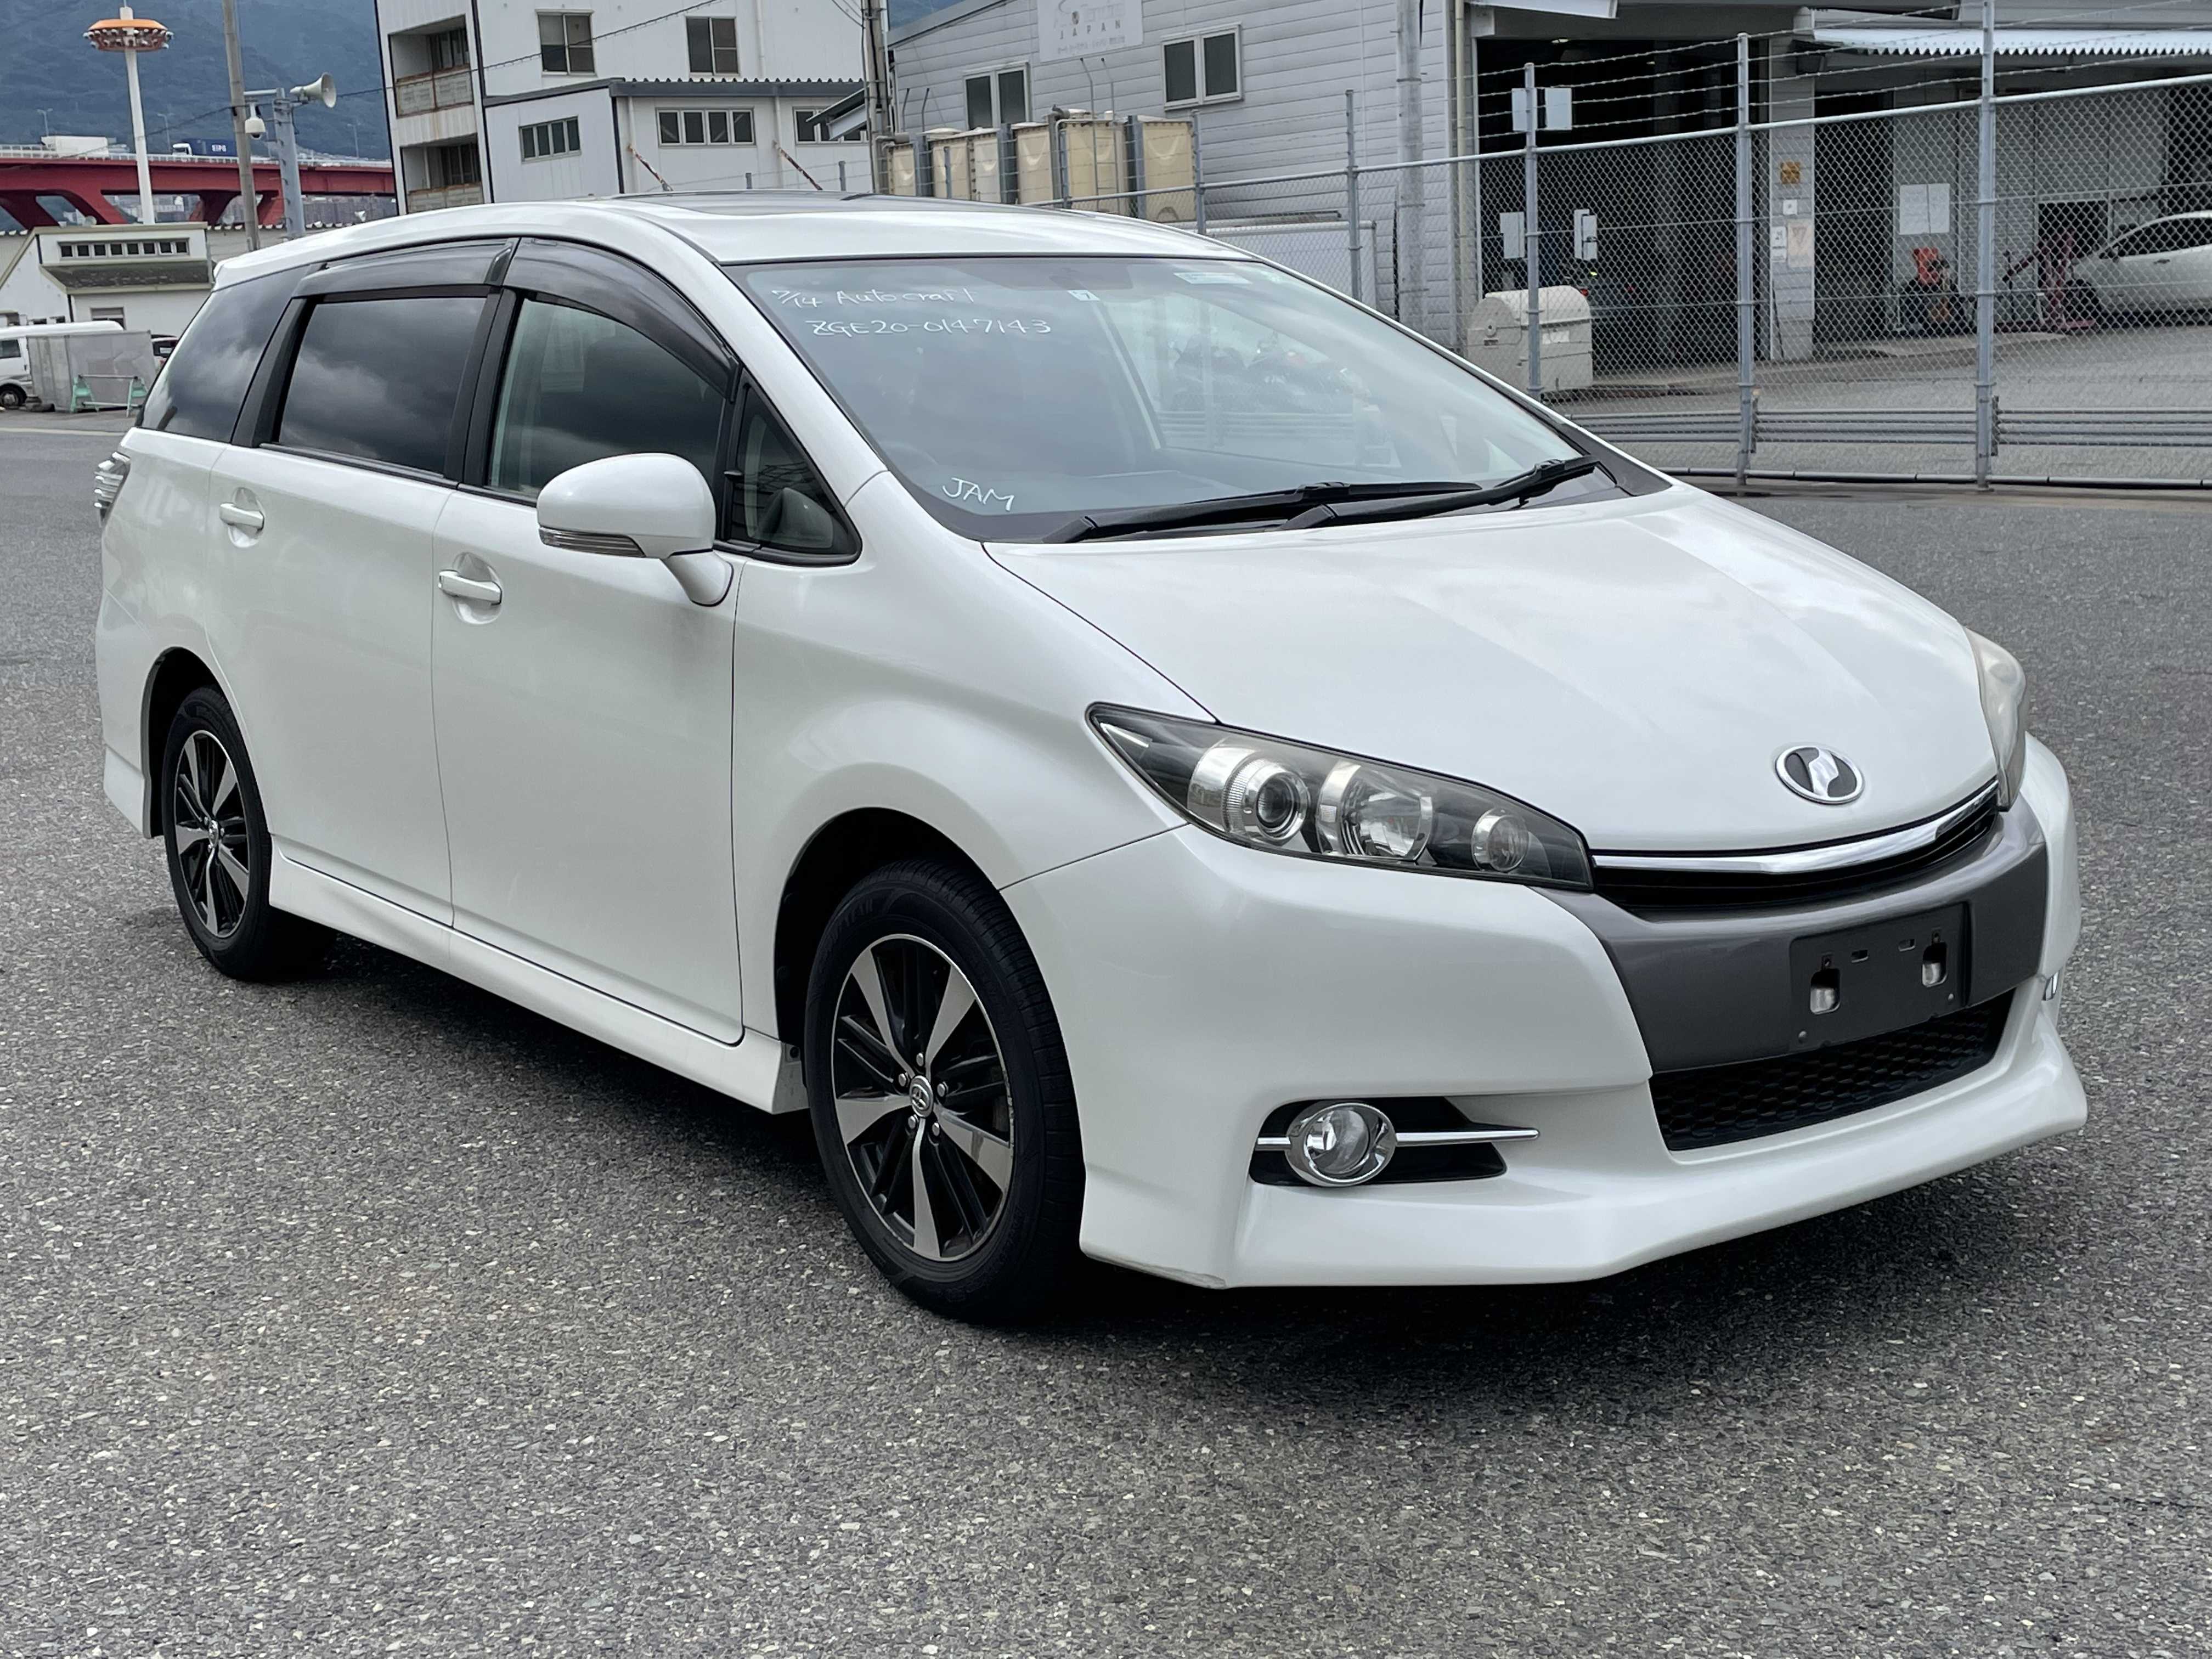 Toyota Wish 2012